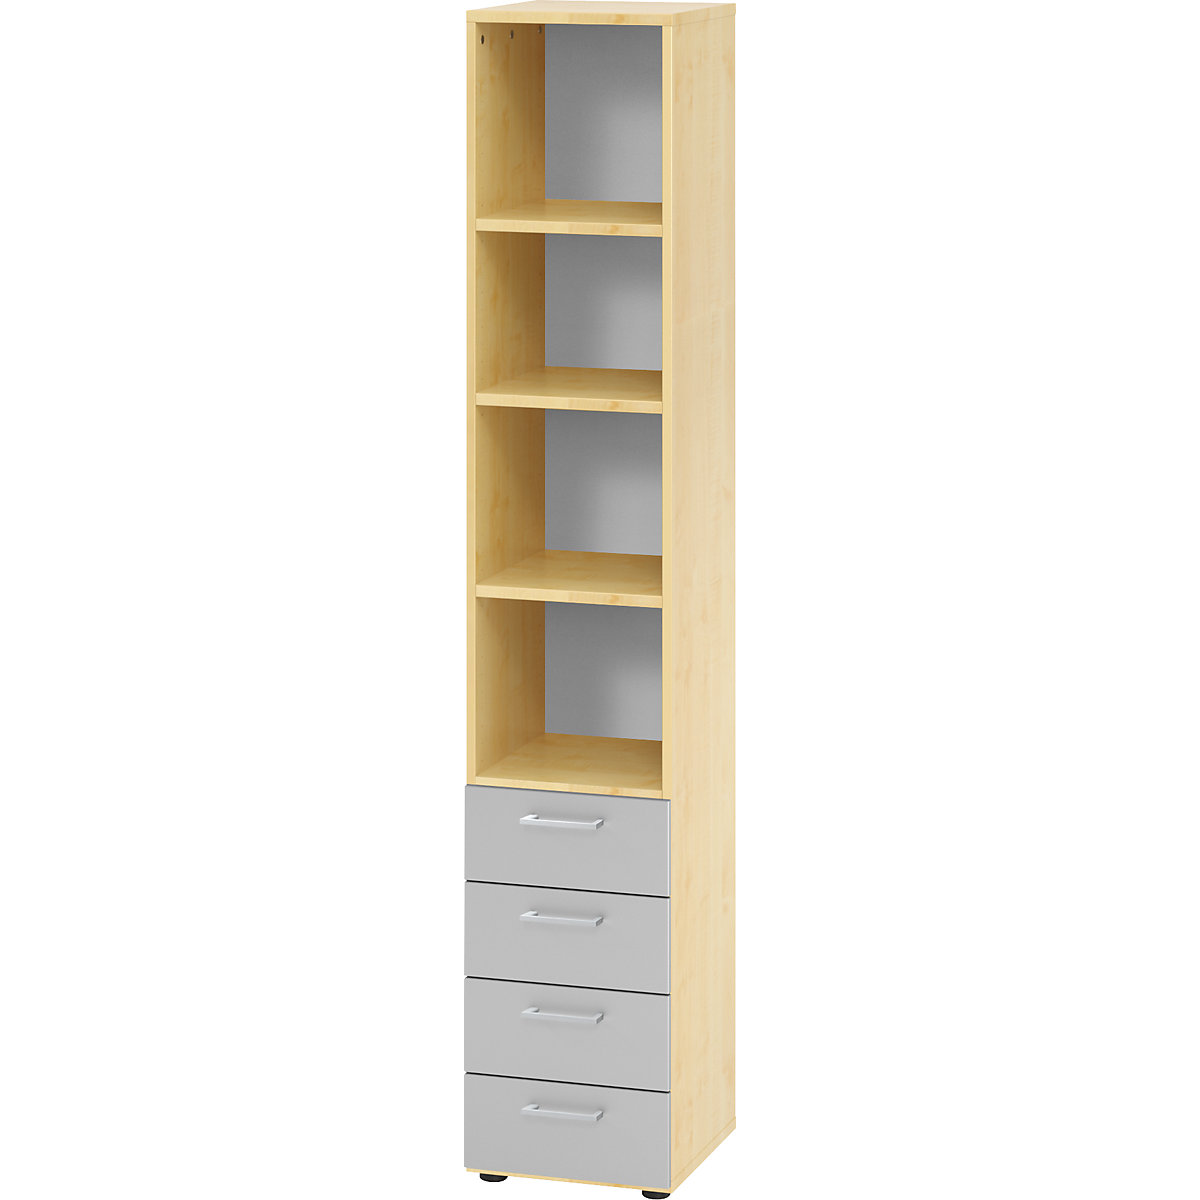 Shelf unit RENATUS – eurokraft pro, 3 shelves / 4 drawers, silver coloured, maple finish-10